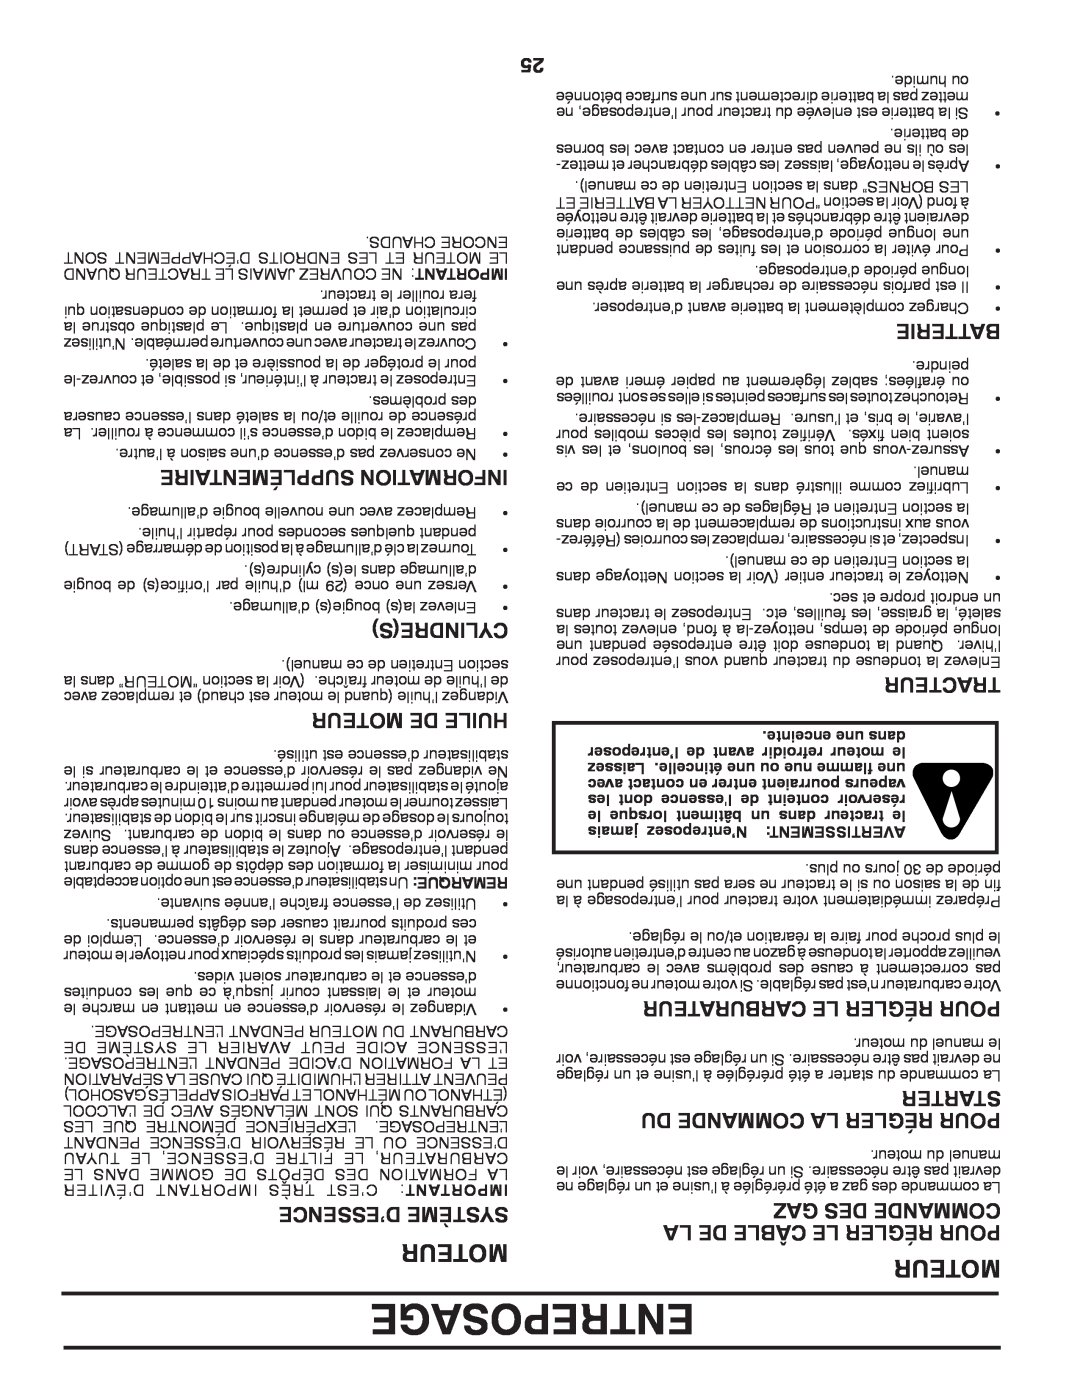 Poulan 411287 Entreposage, Moteur, Du Commande La Régler Pour, Gaz Des Commande, Supplémentaire Information, Cylindres 